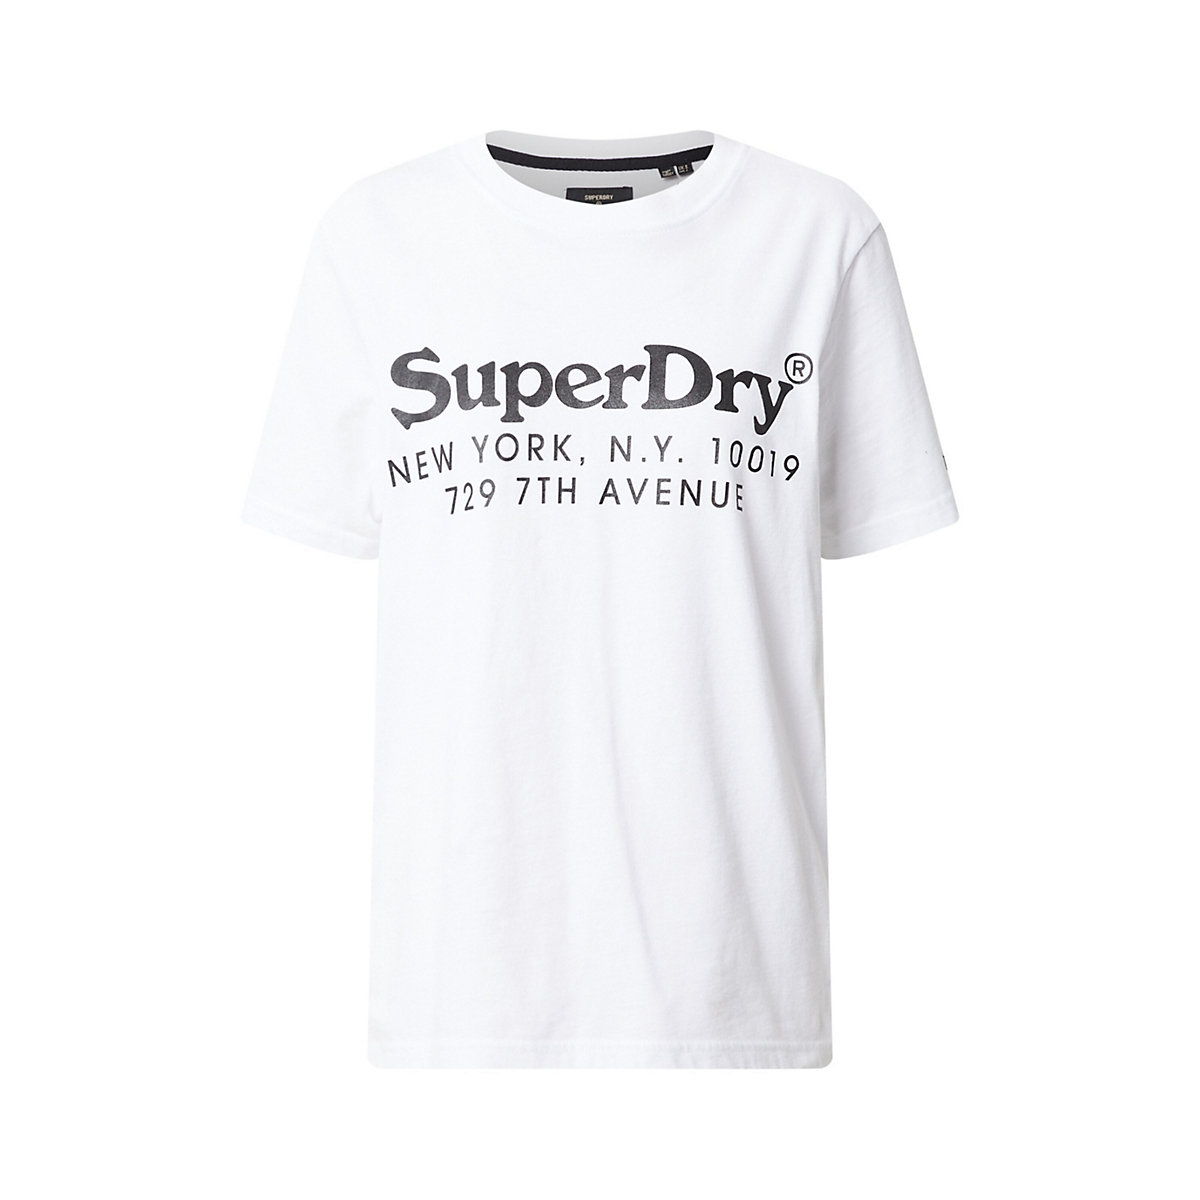 Superdry Shirt schwarz/weiß